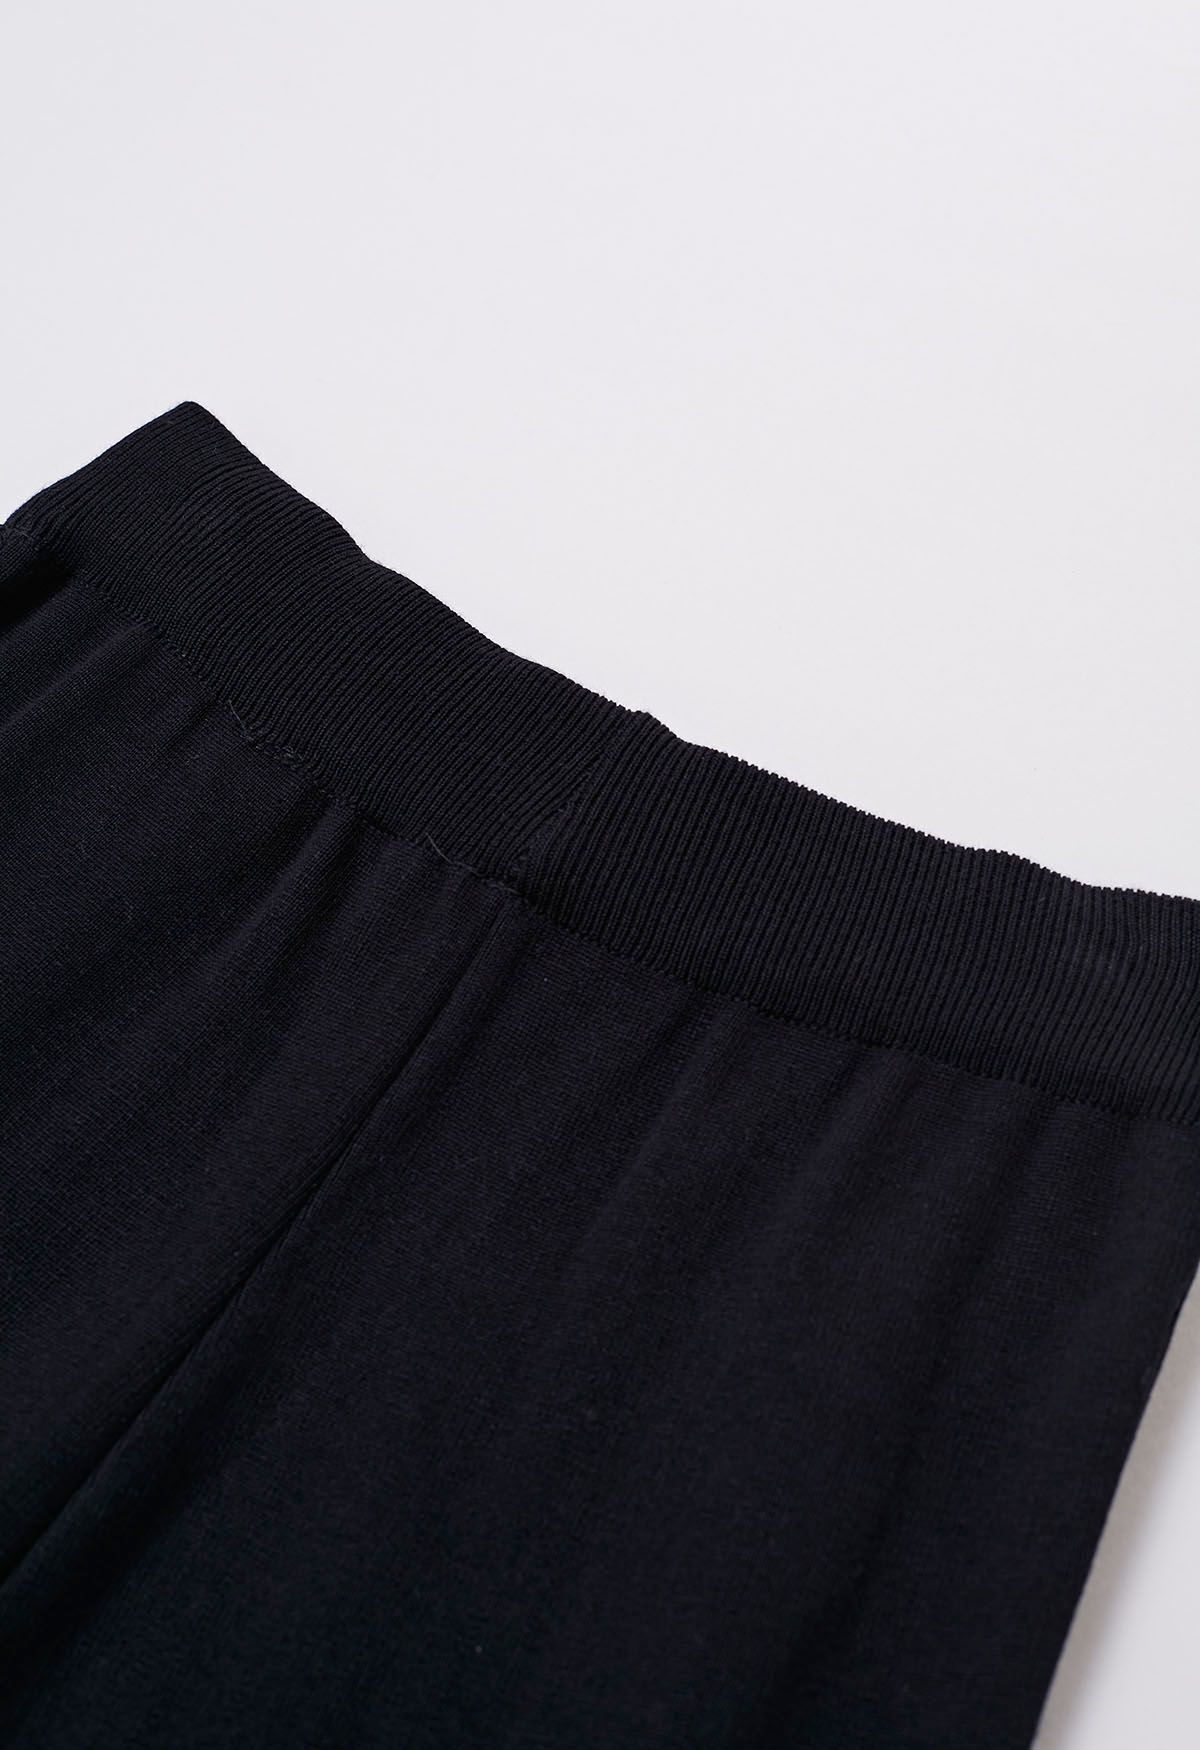 Conjunto de pantalón y cárdigan de punto cruzado con diseño de pata de gallo en negro